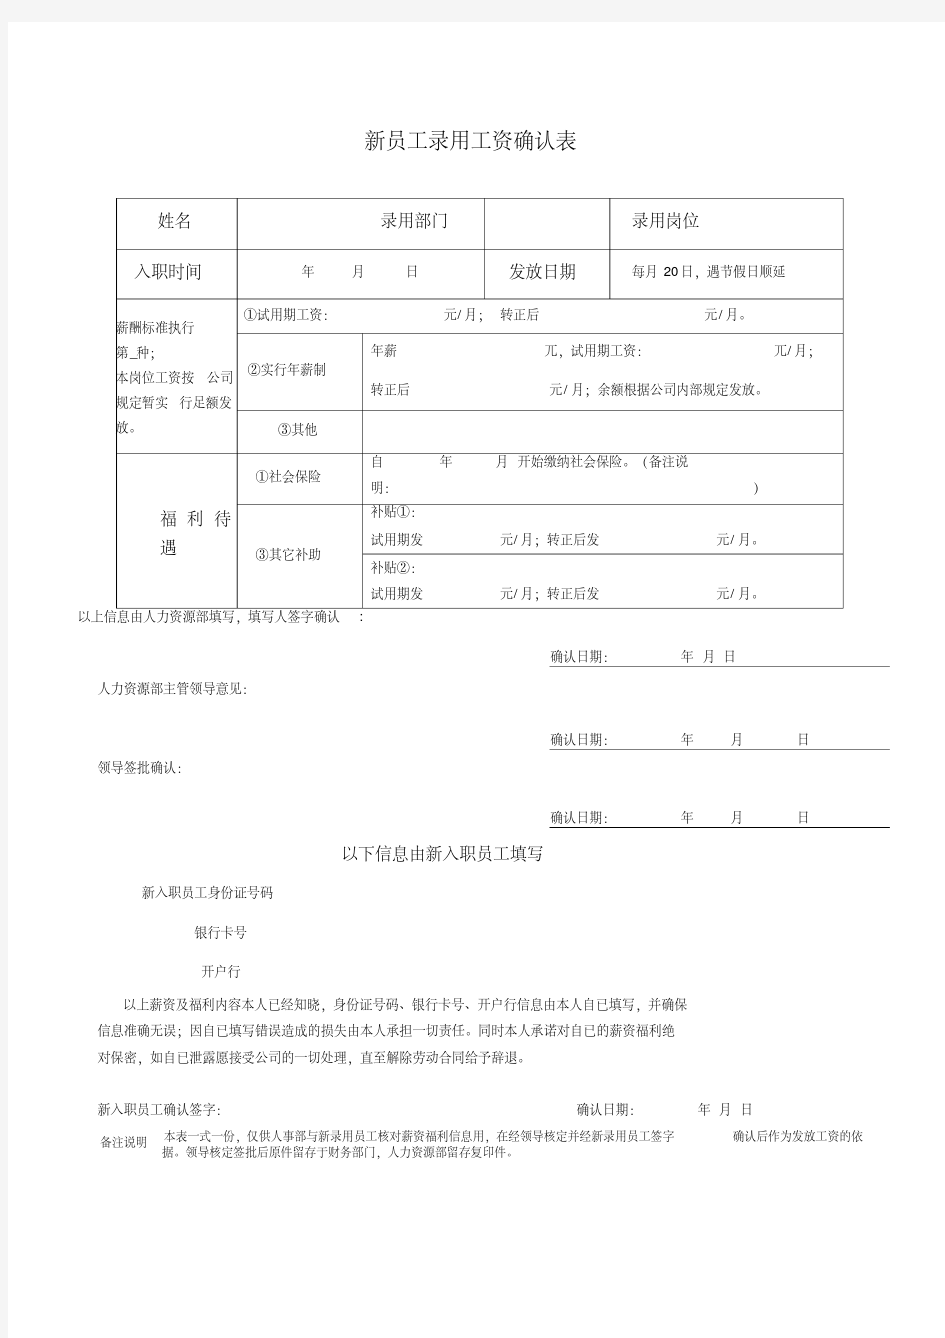 员工入职资料表格汇总.pdf